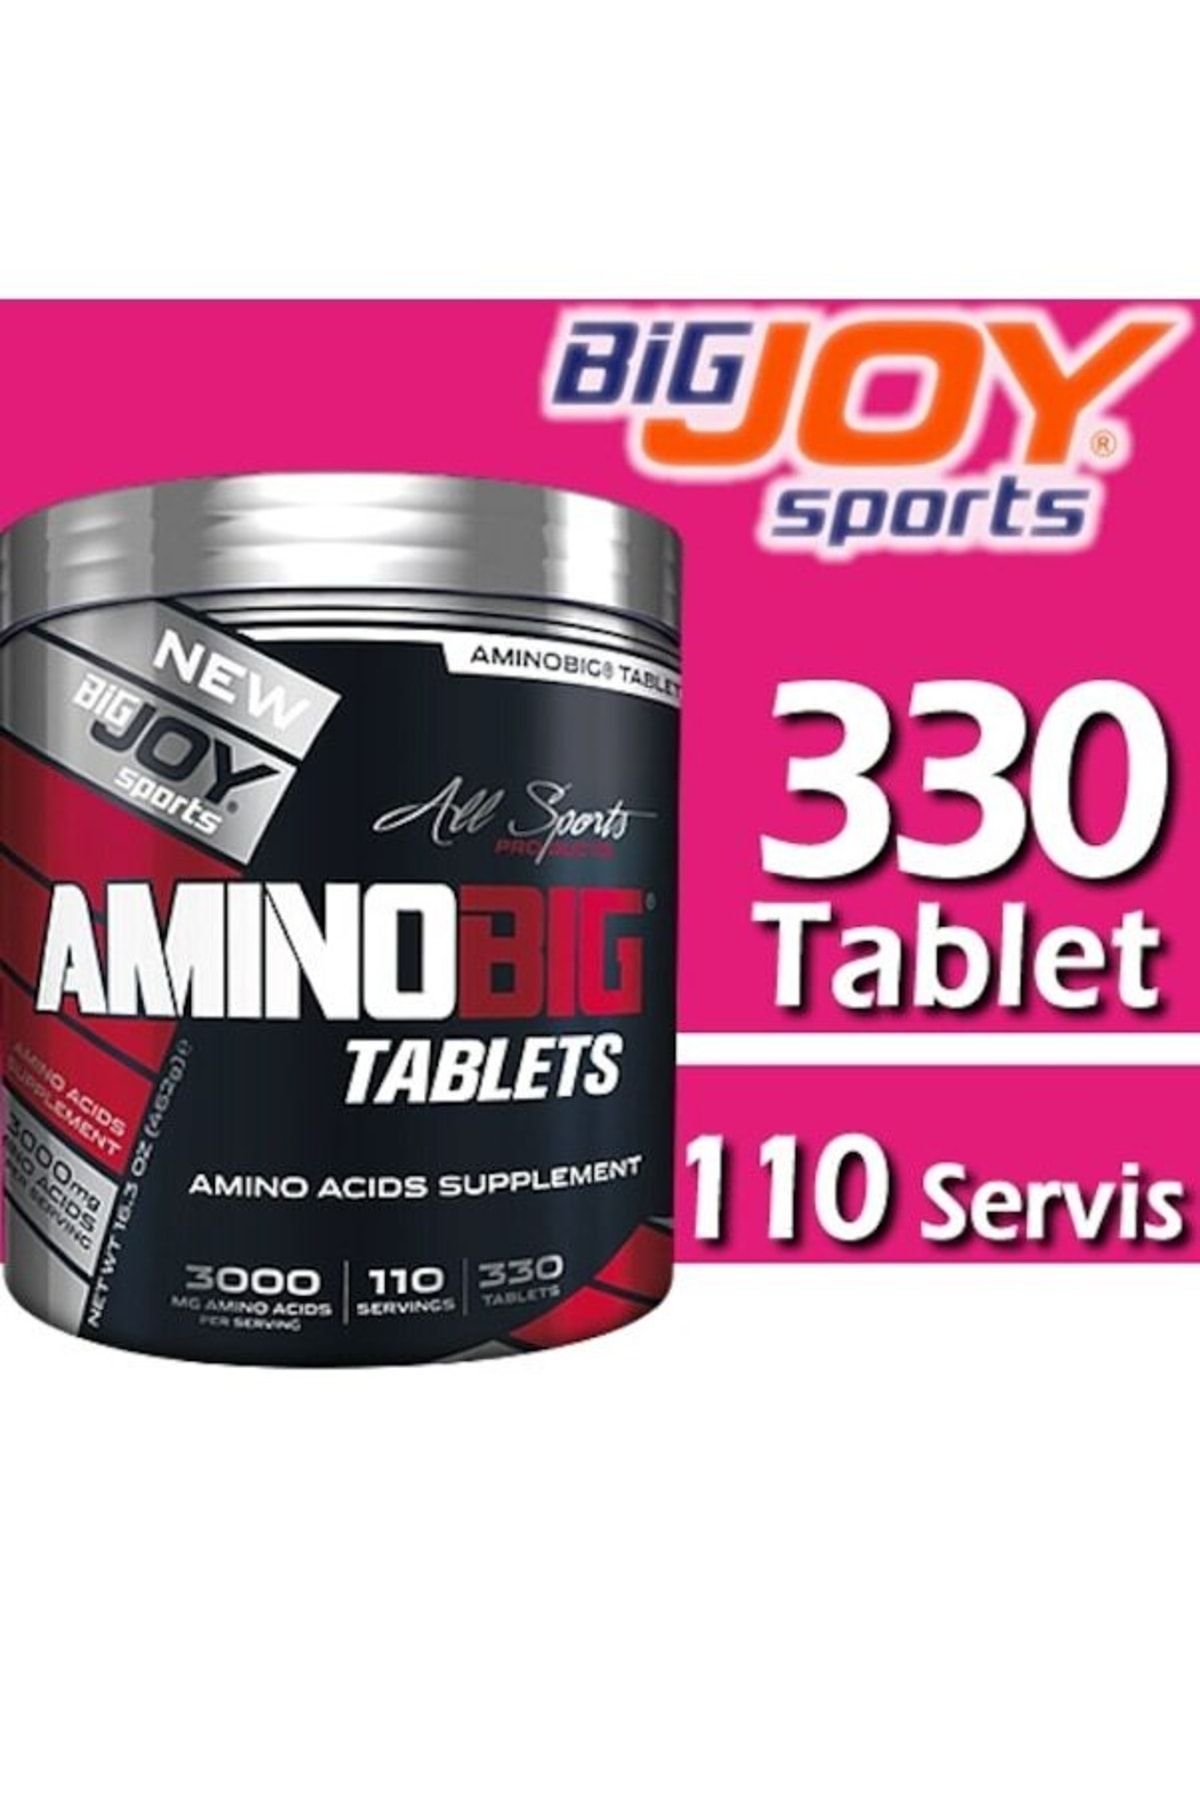 Big Joy Sports Aminobig Amino Asit 330 Tablet